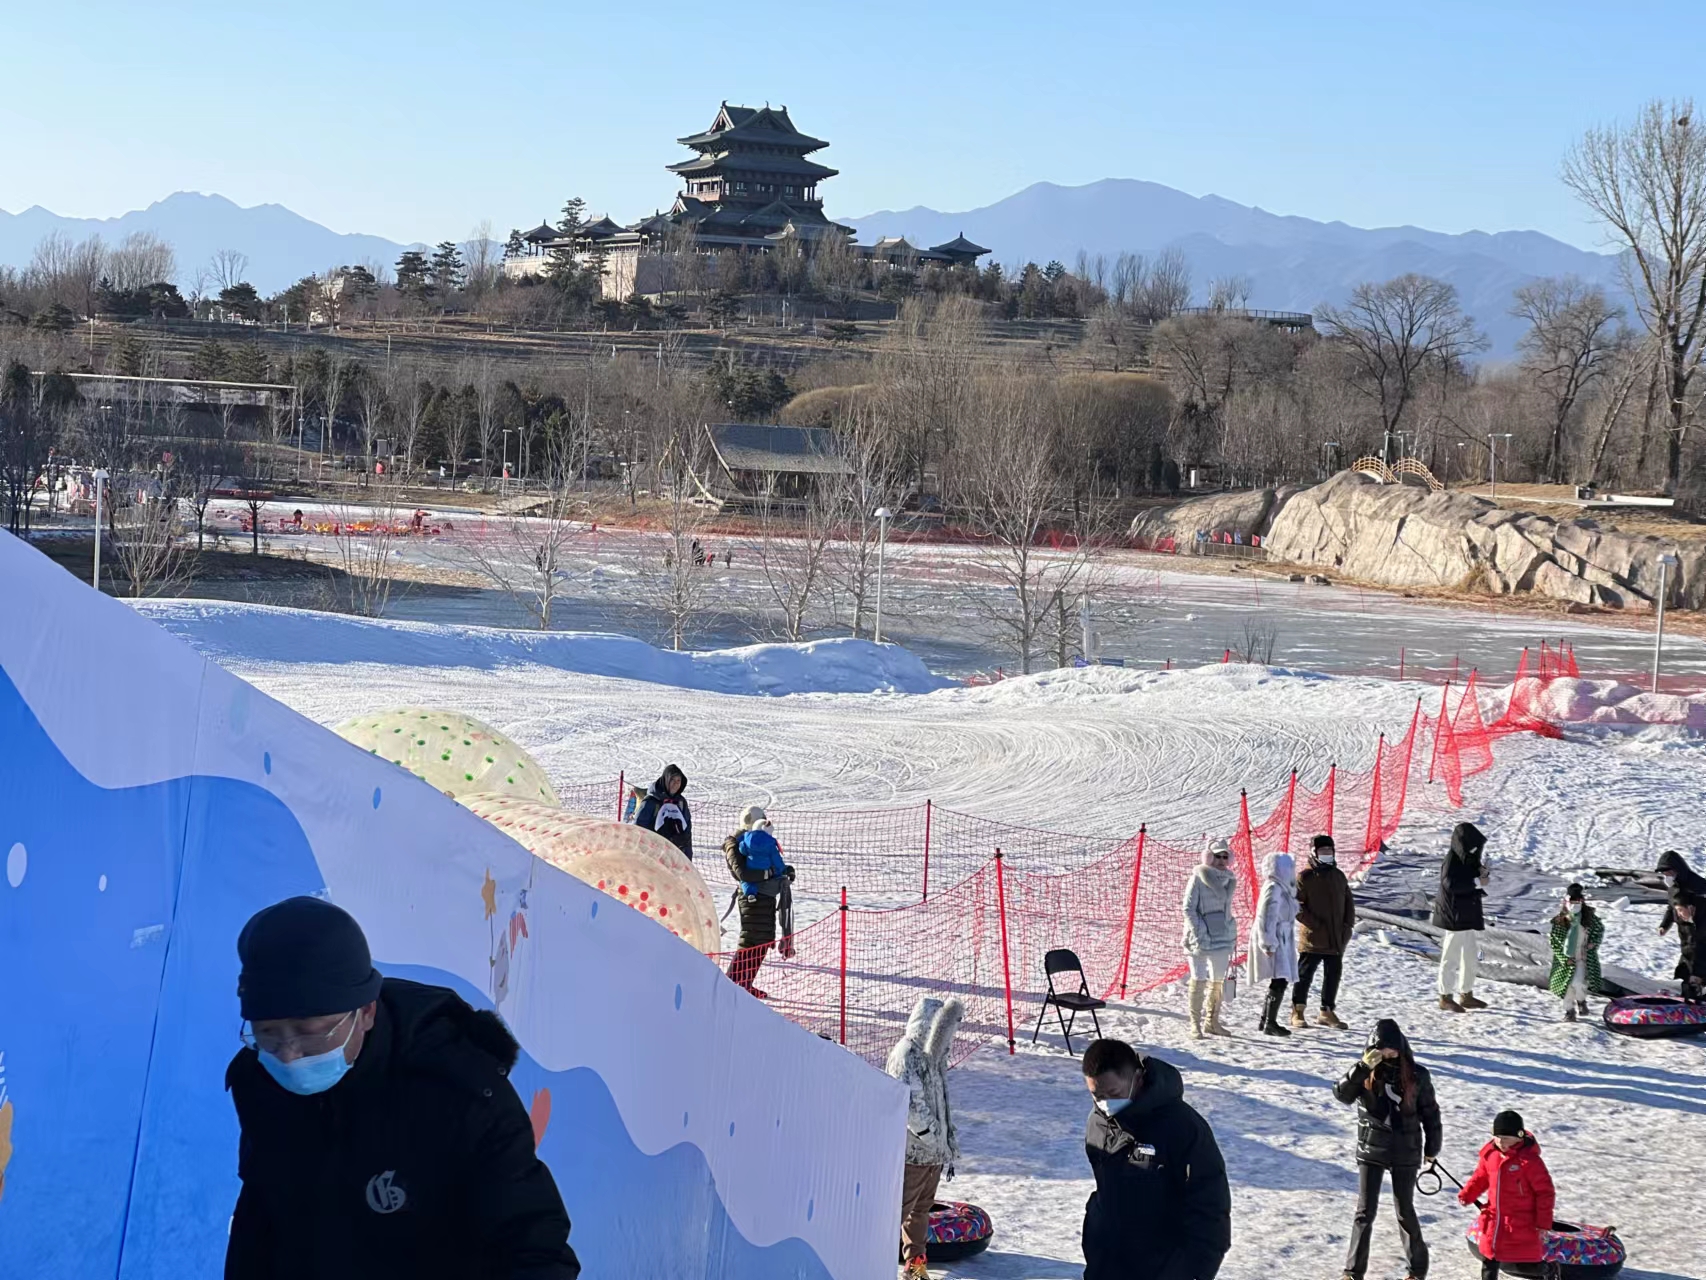 北京世园公园花灯艺术节与冰雪嘉年华两档大型活动在春节期间同时举办。北京世园公园供图